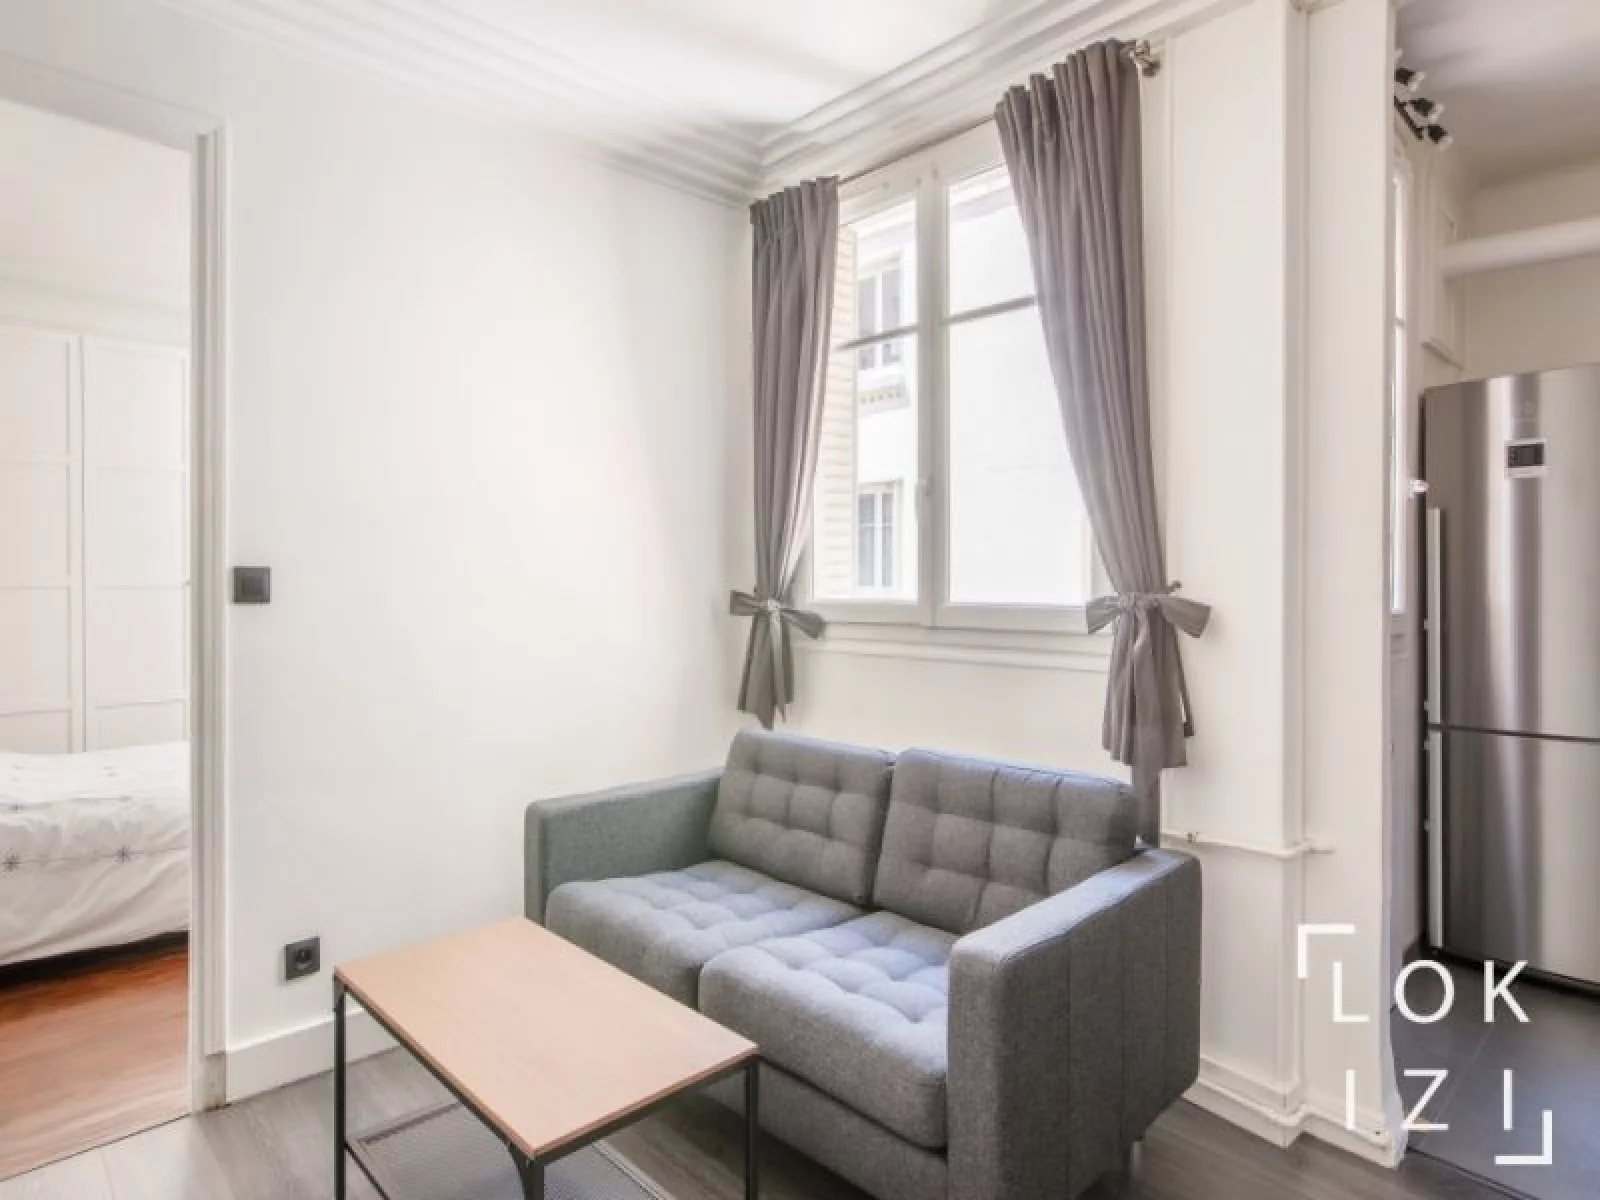 Location appartement meublé 2 pièces 36m² (Paris - 20ème) 